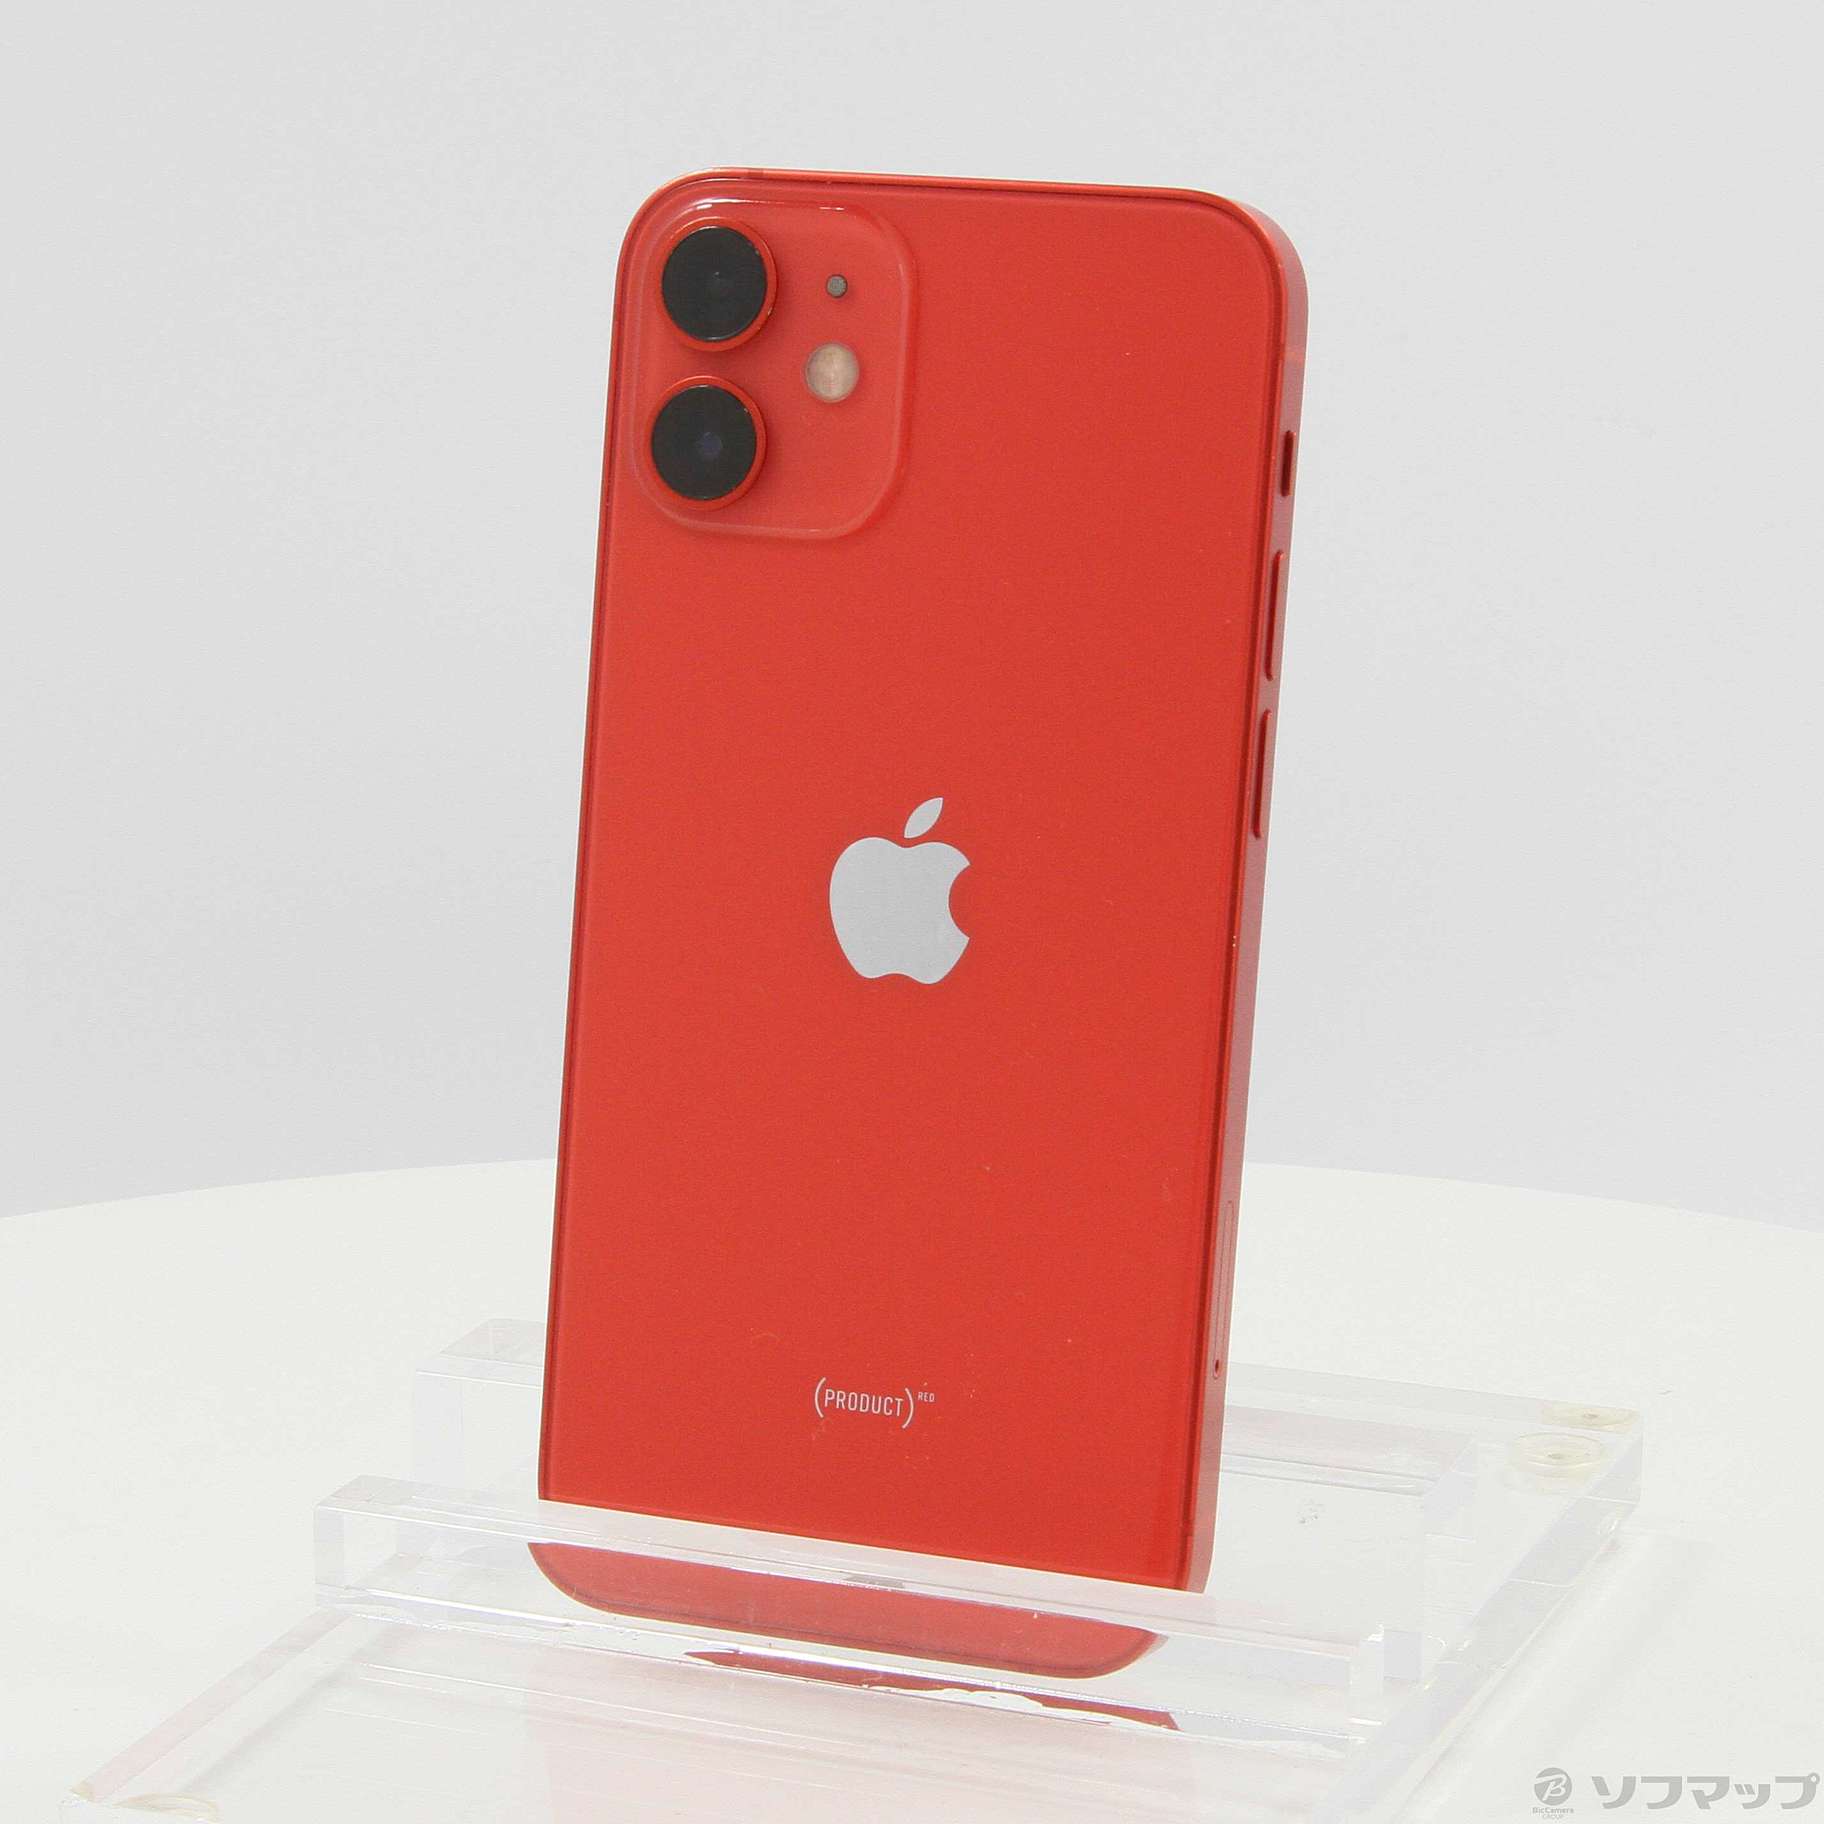 iPhone 12 mini 128GB RED